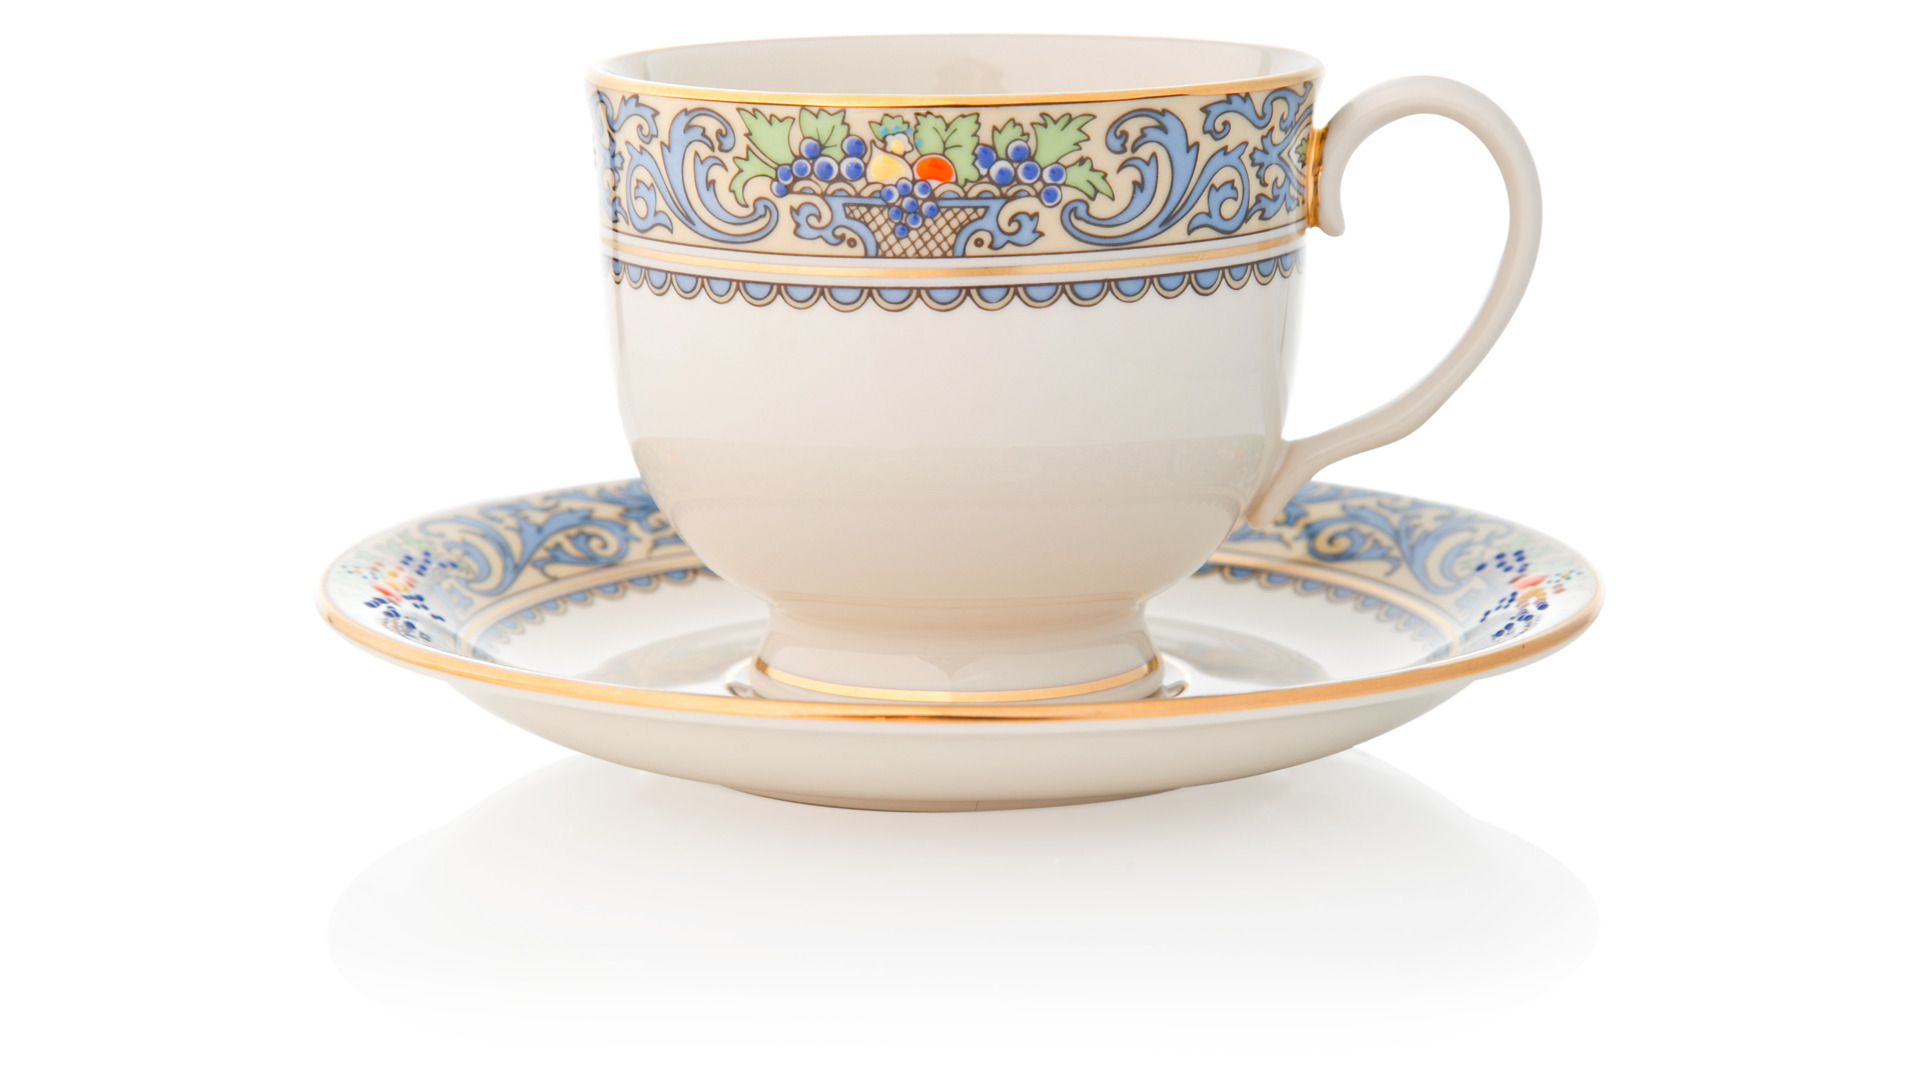 Сервиз чайно-столовый Lenox Осень на 1 персону 5 предметов